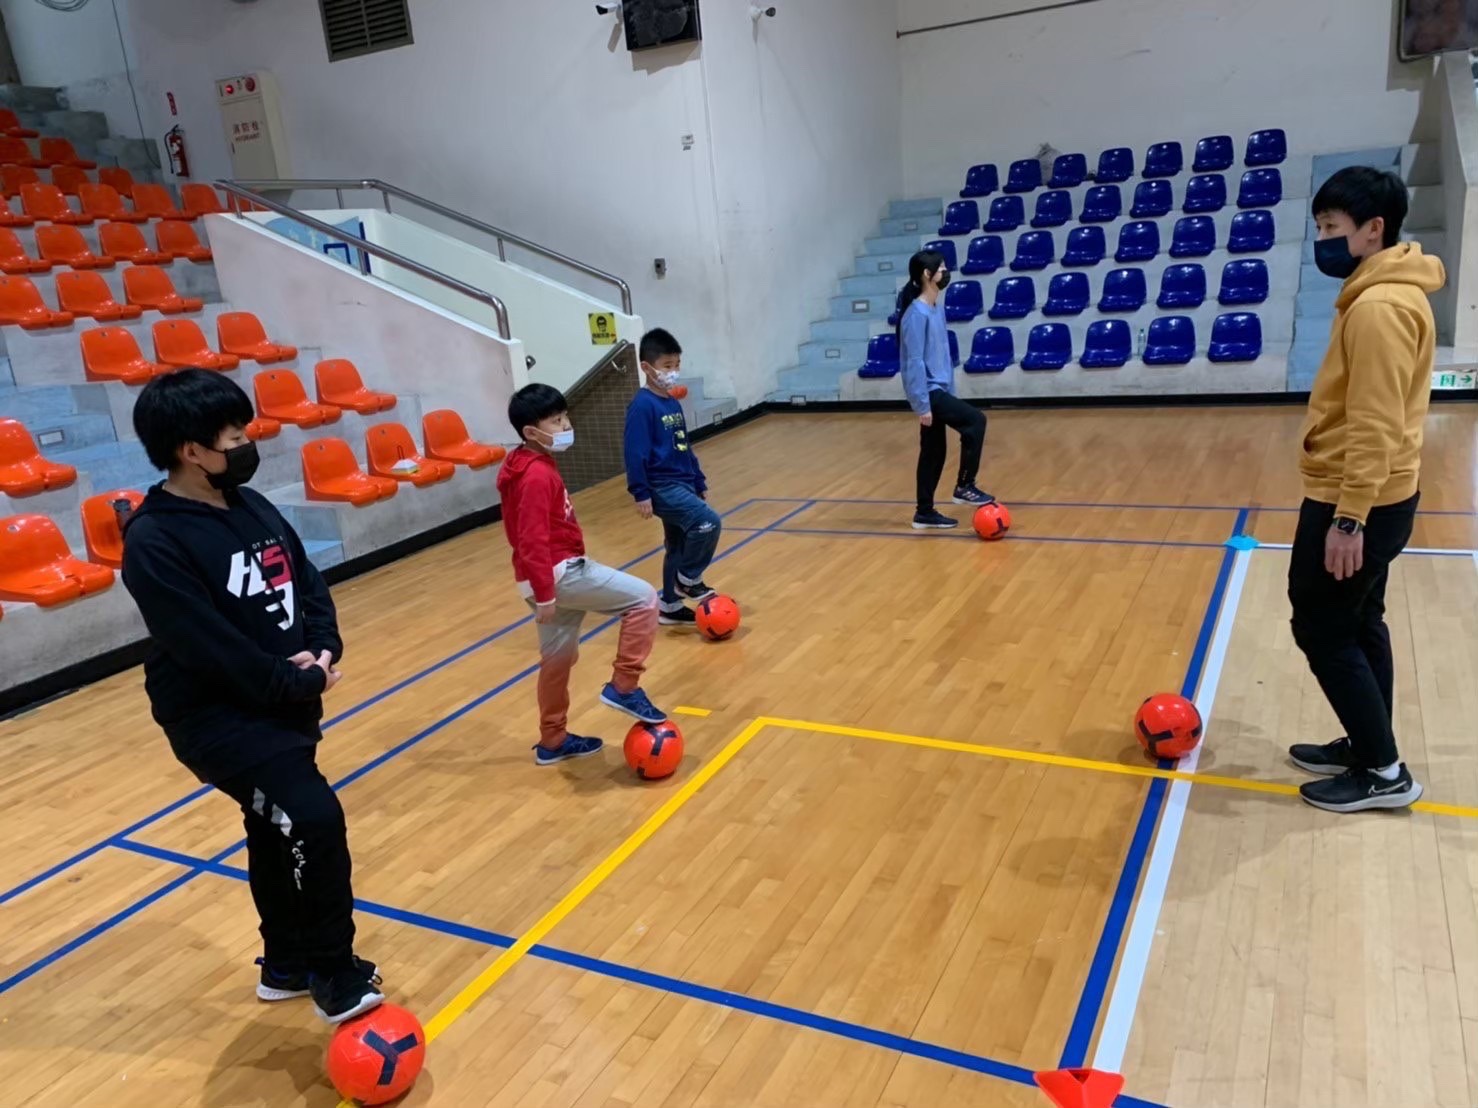 足球訓練從小開始。泰山體育館提供